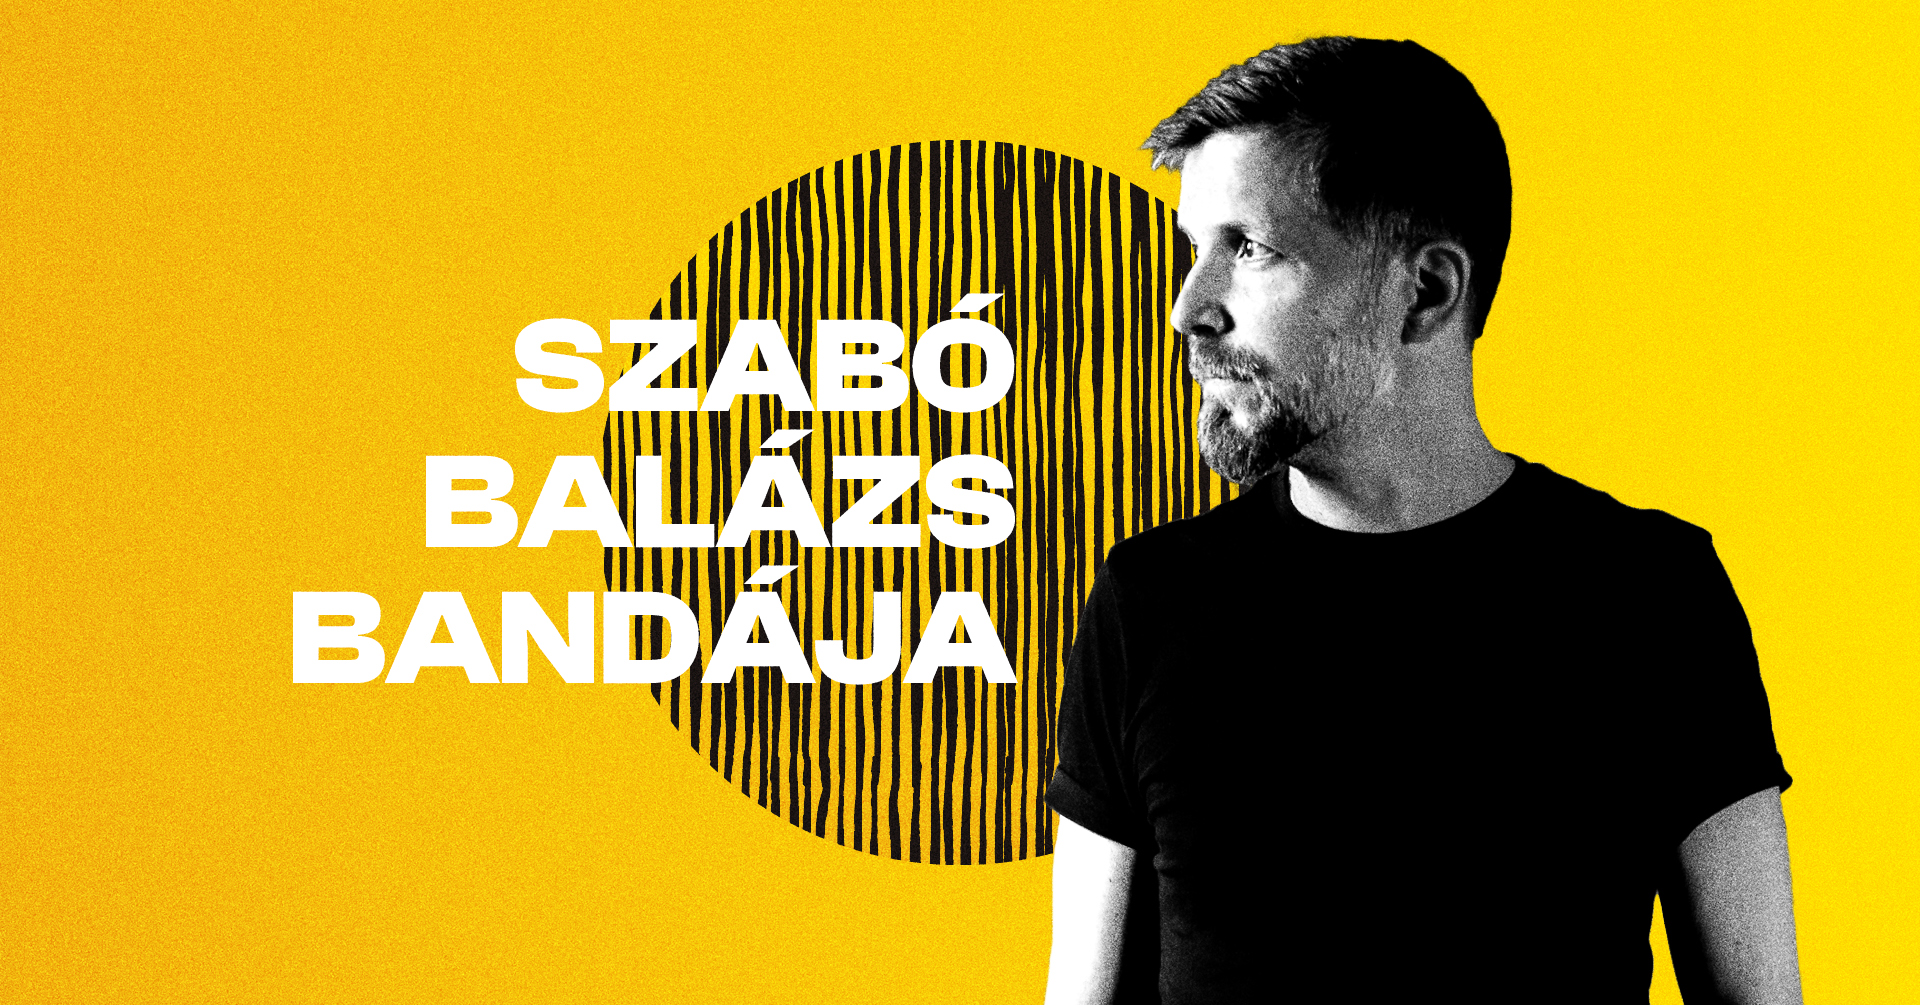 Szabó Balázs bandája - Granárium Zebra Club